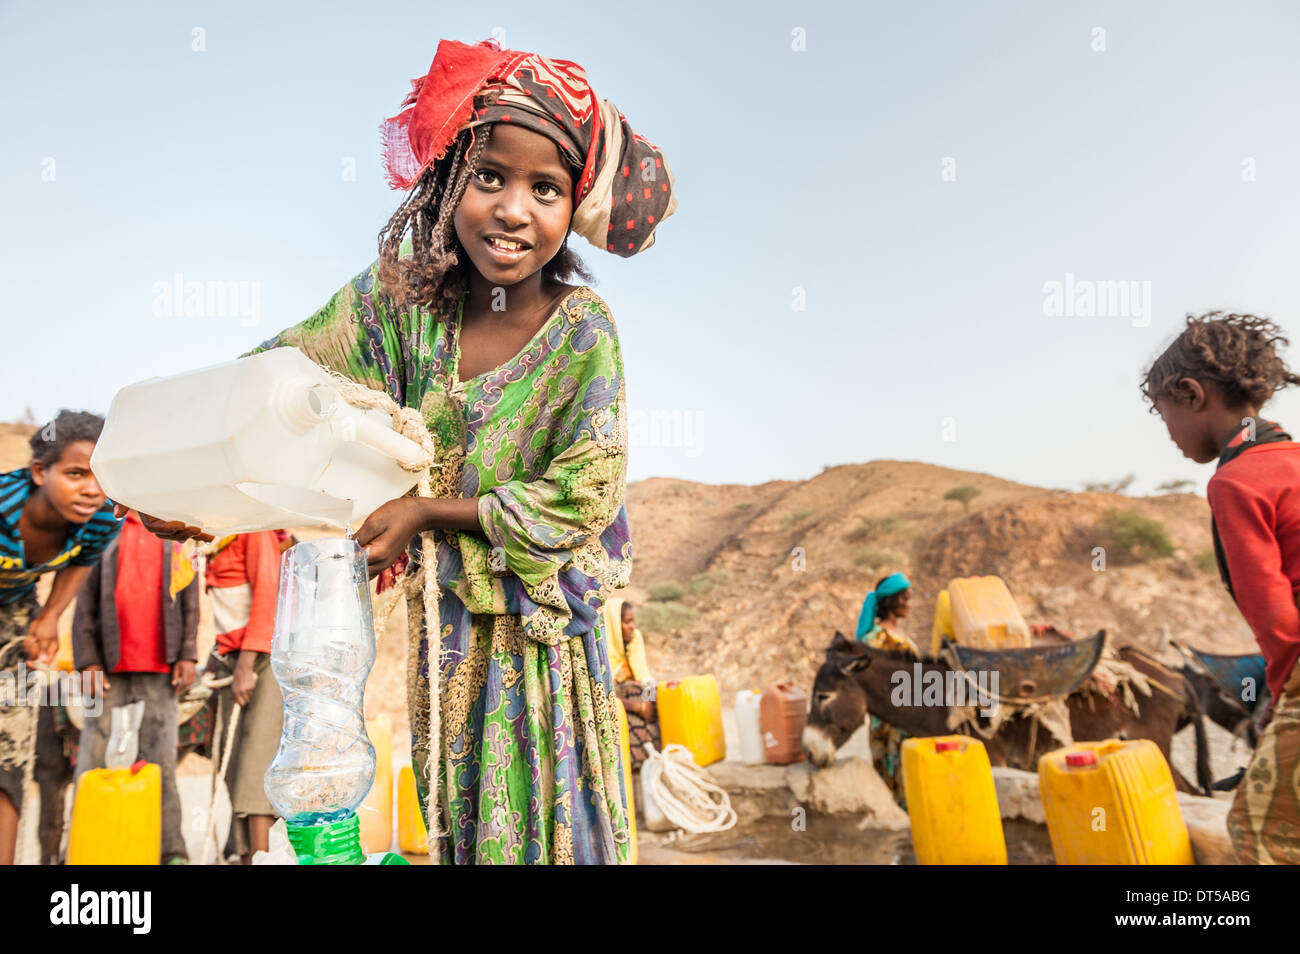 Les enfants vont chercher de l'eau d'un puits, d'Berhale, Ethiopie, Afrique Banque D'Images